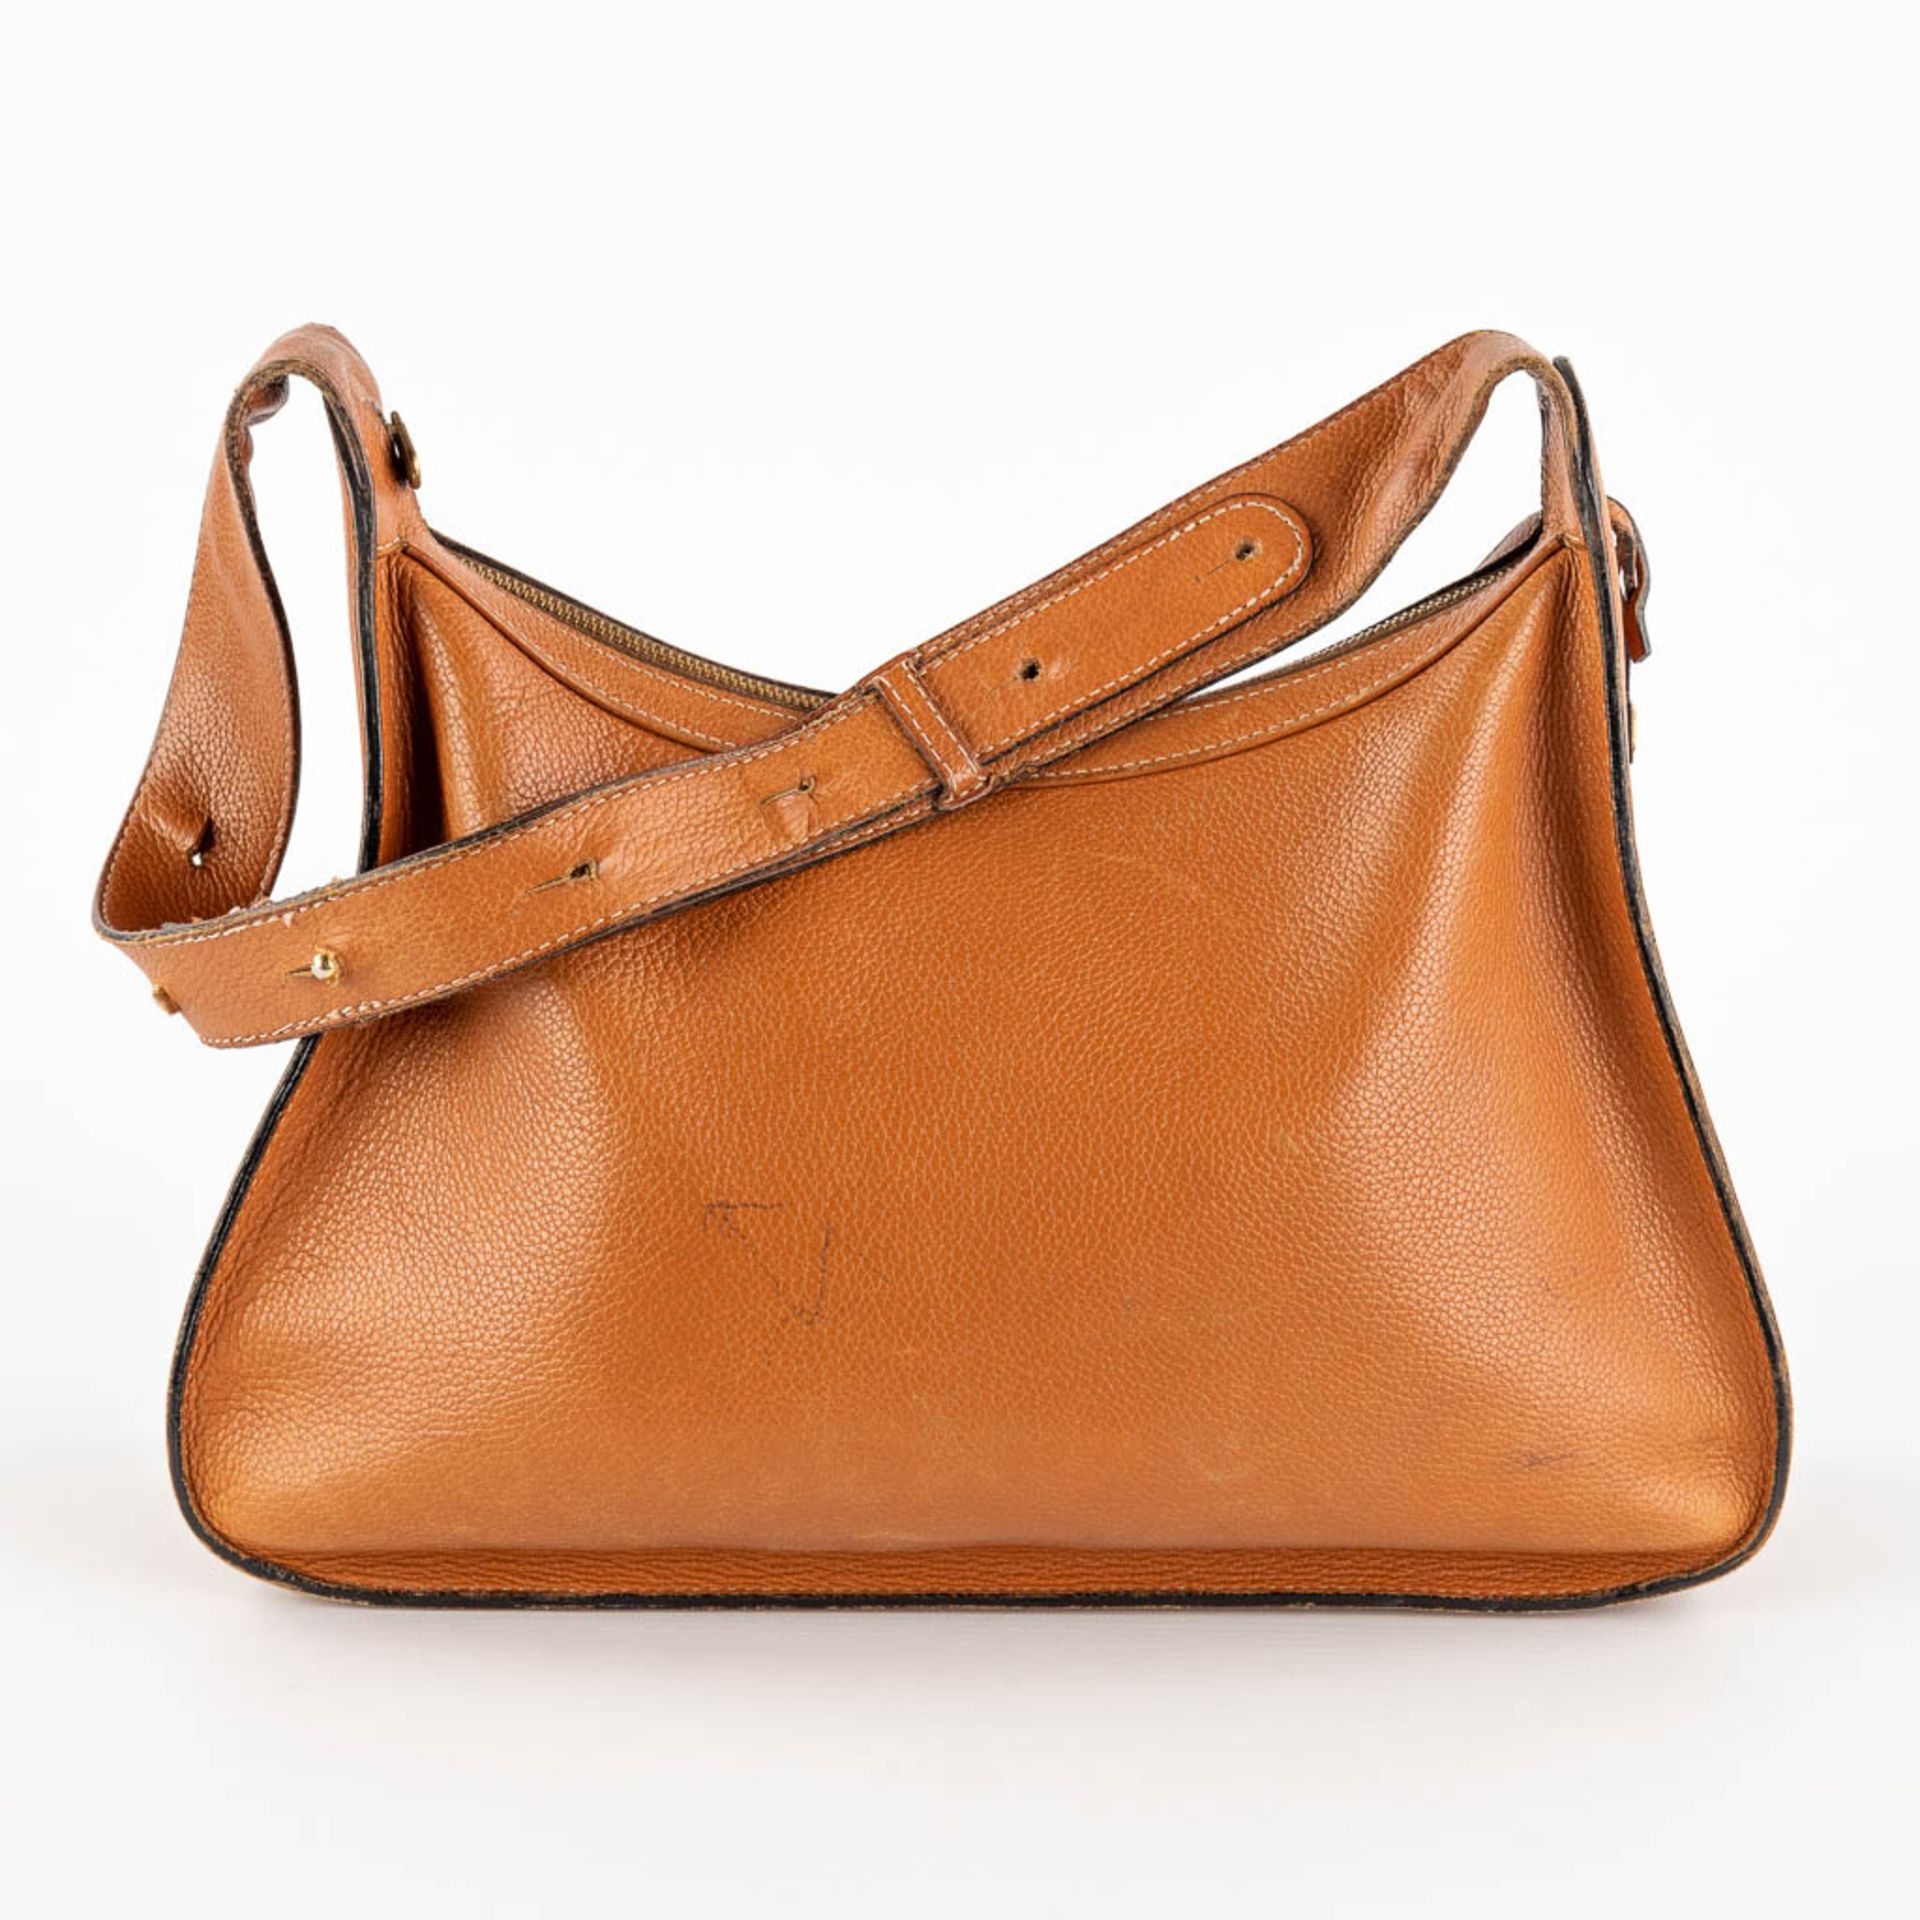 Delvaux, Pensée, a handbag made of brown leather. (W:24 x H:32 cm) - Bild 6 aus 18